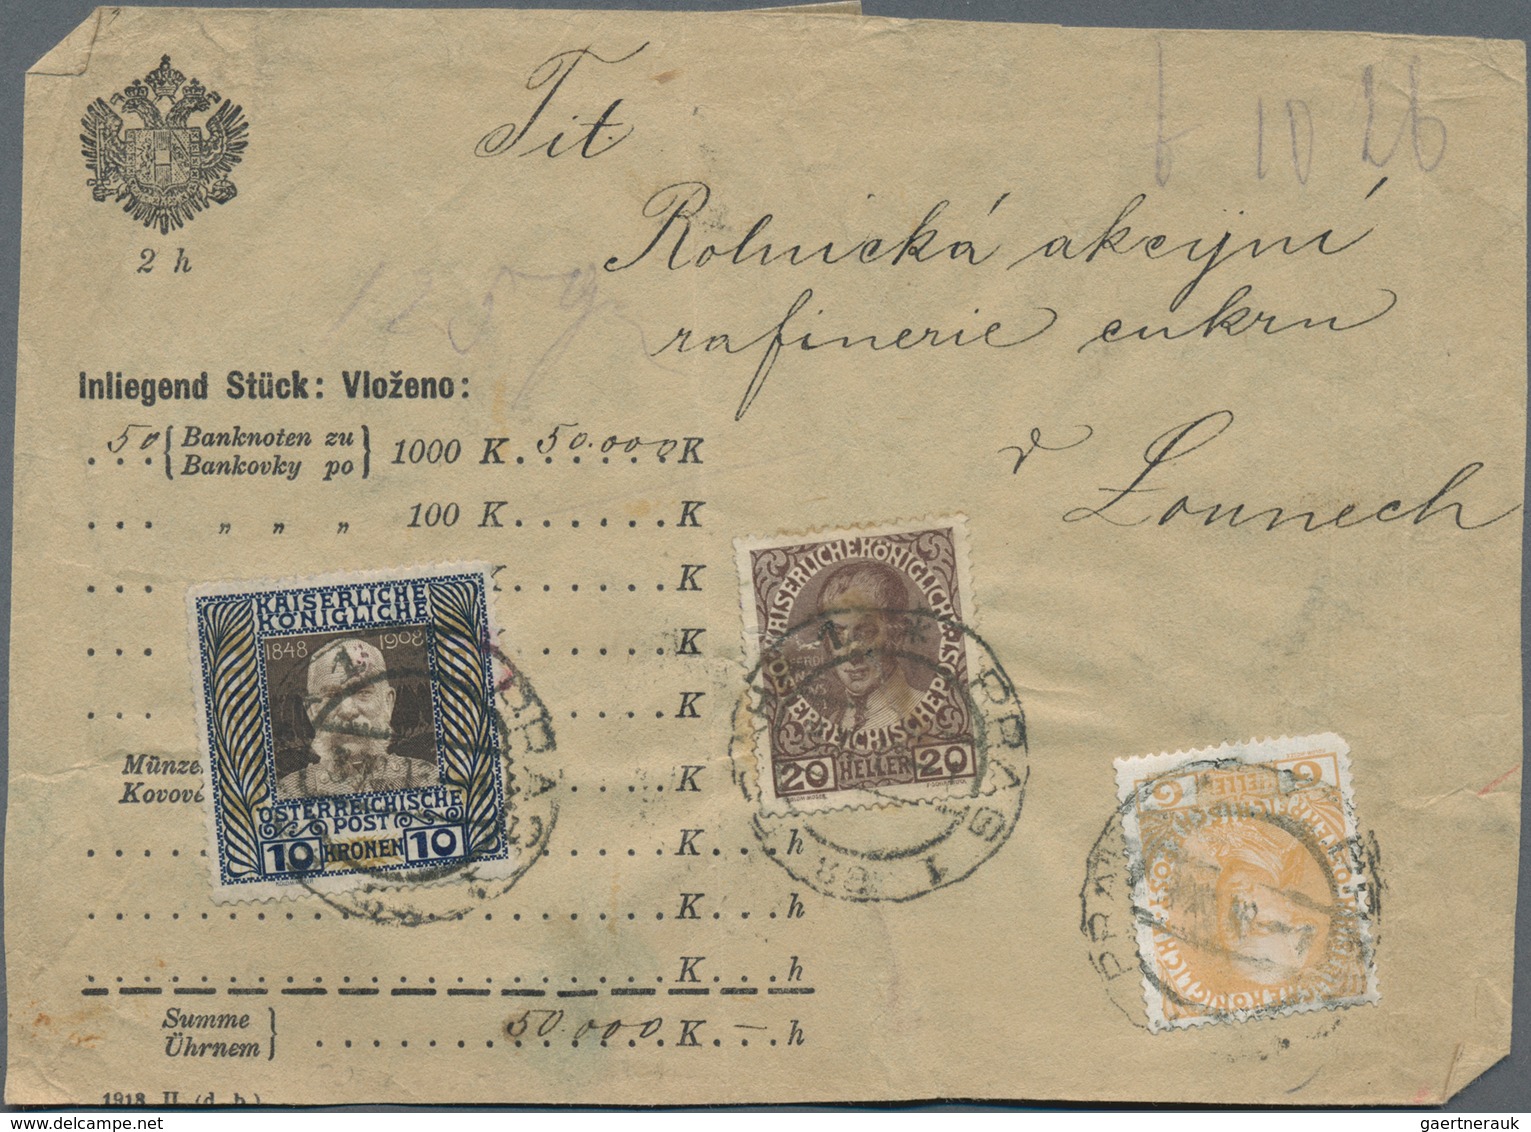 Österreich: 1915-1940, Partie mit 27 besseren Briefen und Belegen, dabei auch WIPA Marke auf Karte,